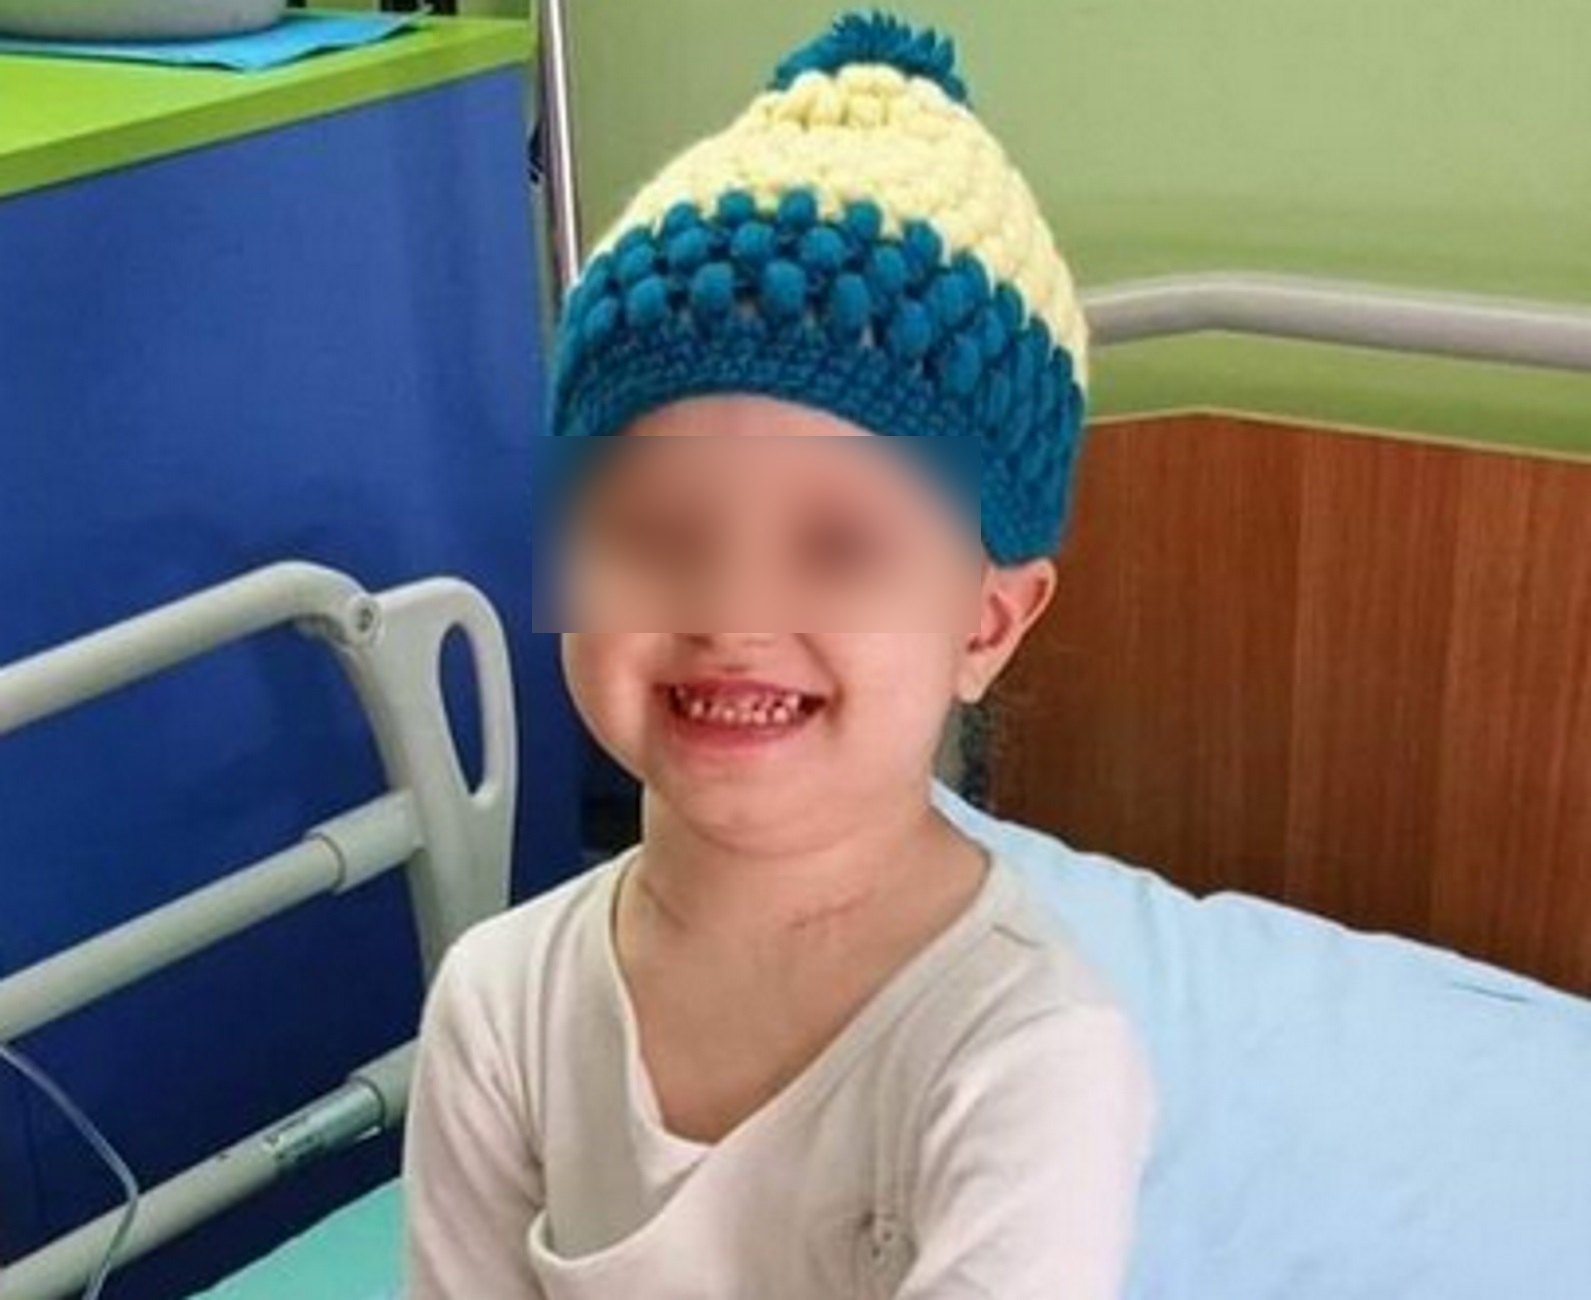 Χαλκιδική: Έρανος για τη μικρή Μαρία που δίνει μάχη με τον καρκίνο – Συγκεντρώθηκαν 32.000 ευρώ